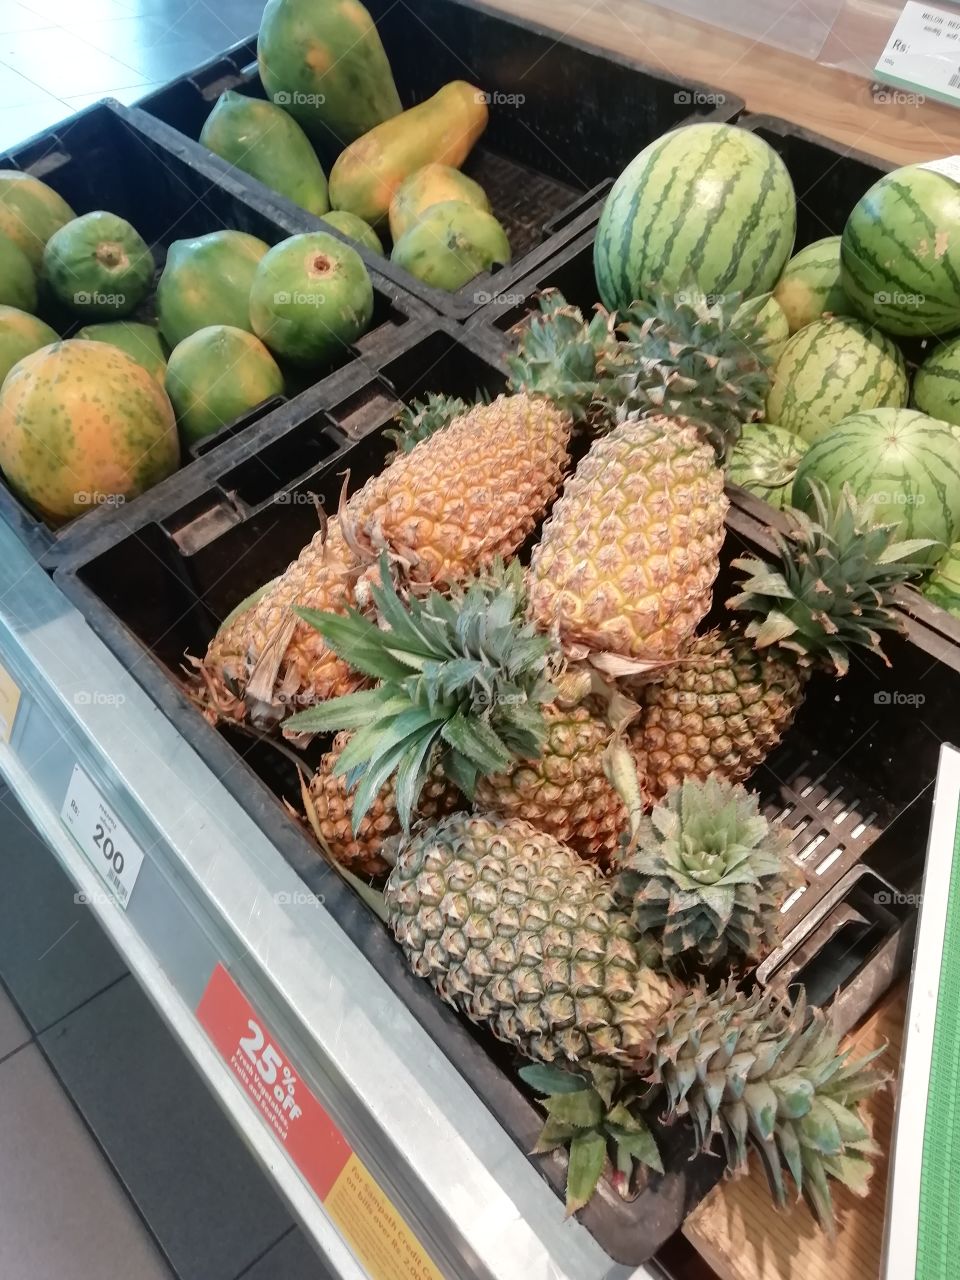 Water melon water melon.. Papaya papaya.. And pineapple too 🍉🍍🍈